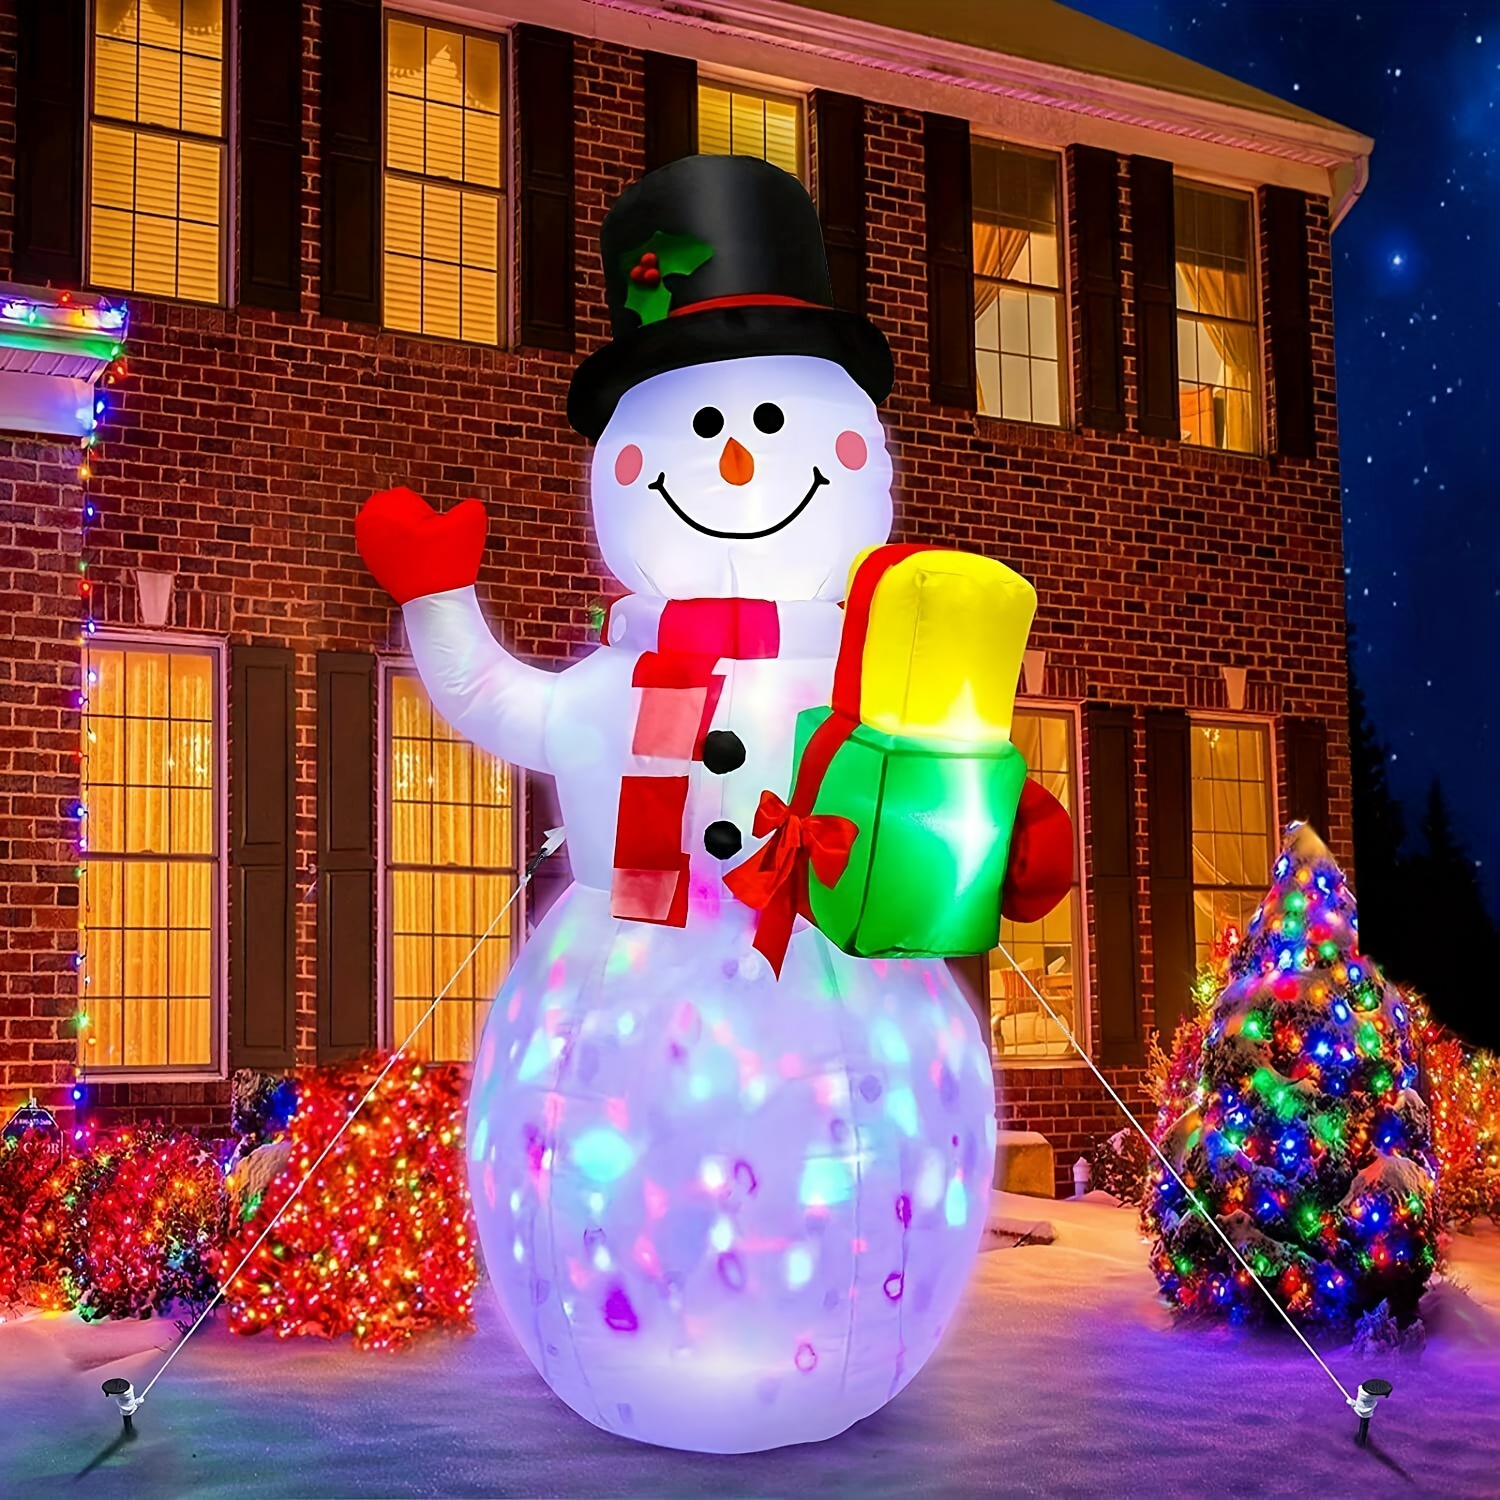 Real Snowman Decorating Making Kit 16Pcs Christmas Xmas Holiday Gift  Outdoor